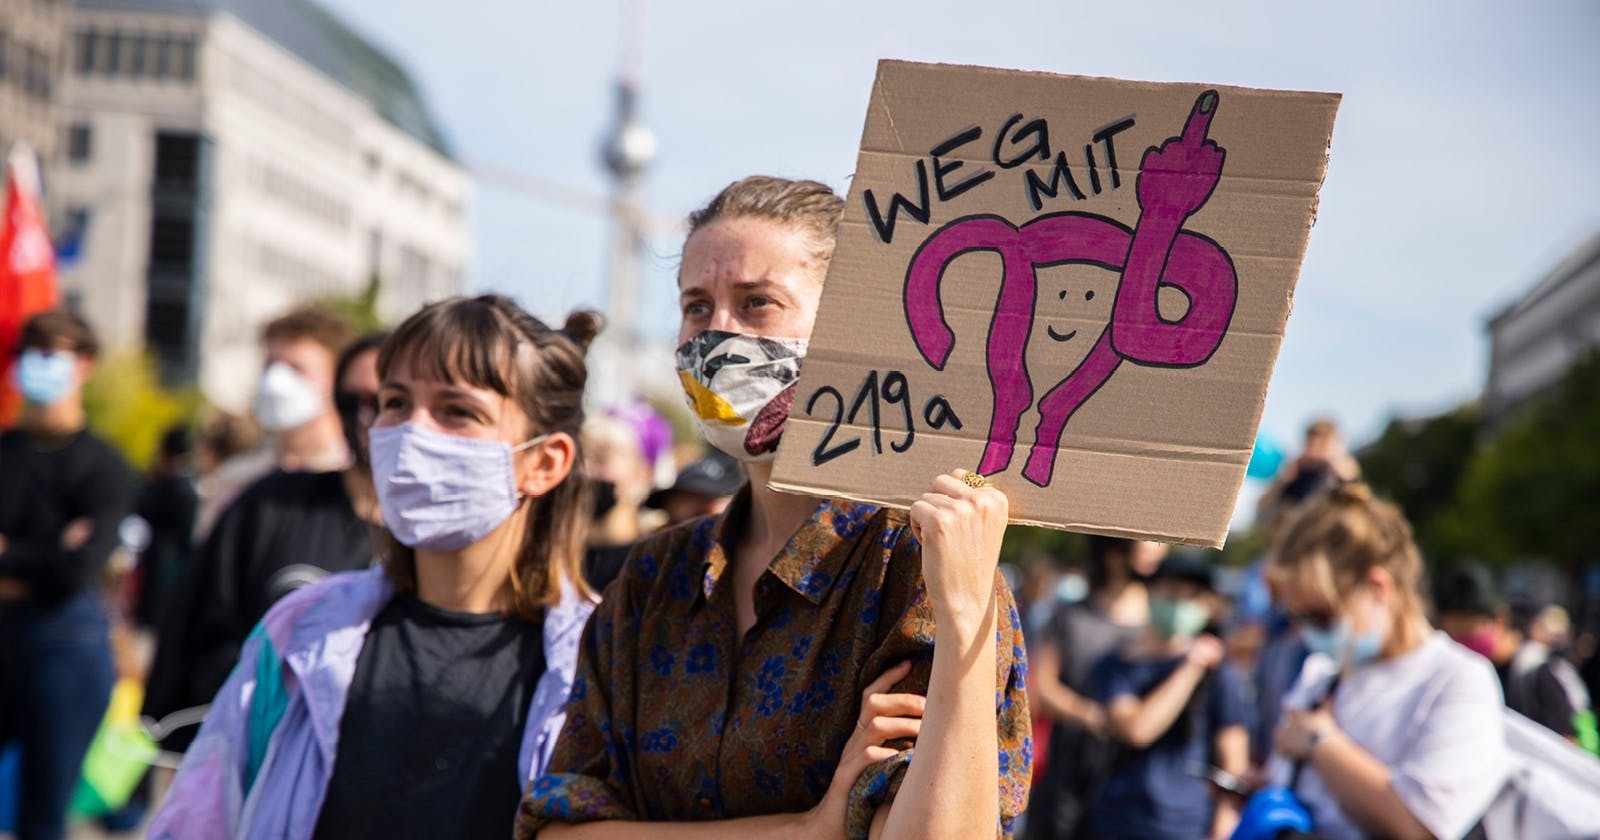 Zwei junge Frauen mit Mund-Nasen-Schutz stehen auf einem Platz. Die eine hält ein Schild mit der Aufschrift "Weg mit 2019a" und der stilisierten Zeichnung von Eierstöcken, die den Mittelfinger zeigen.